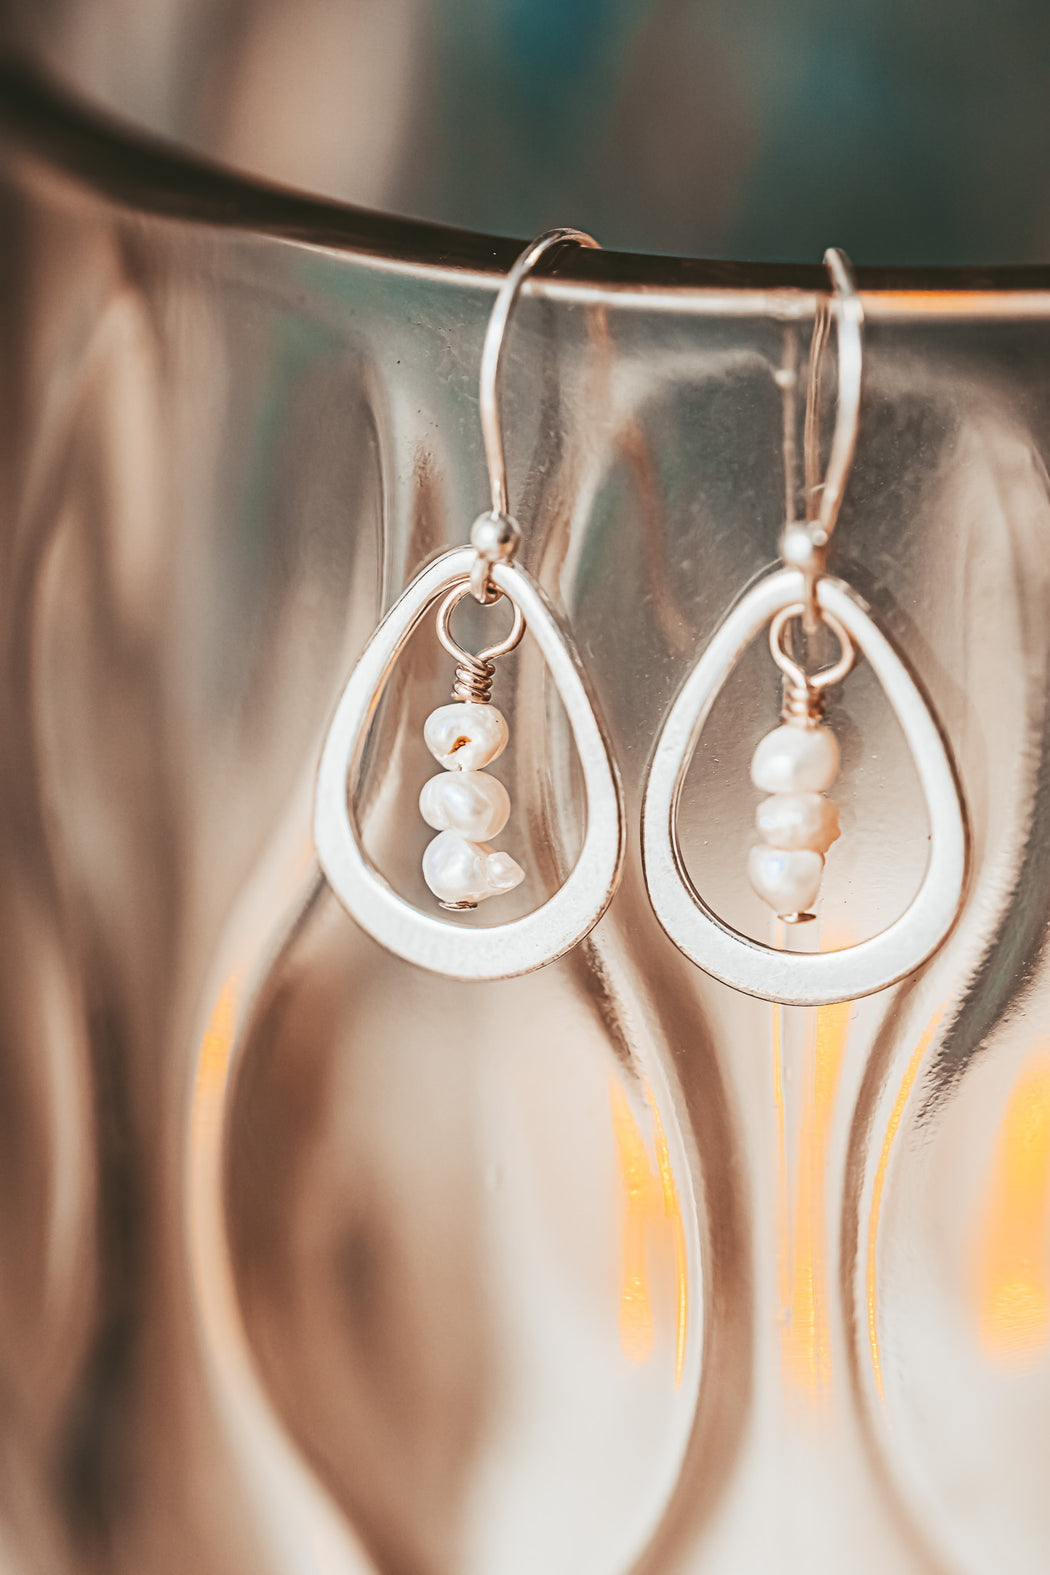 sterling silver hoop earrings with seed pearls